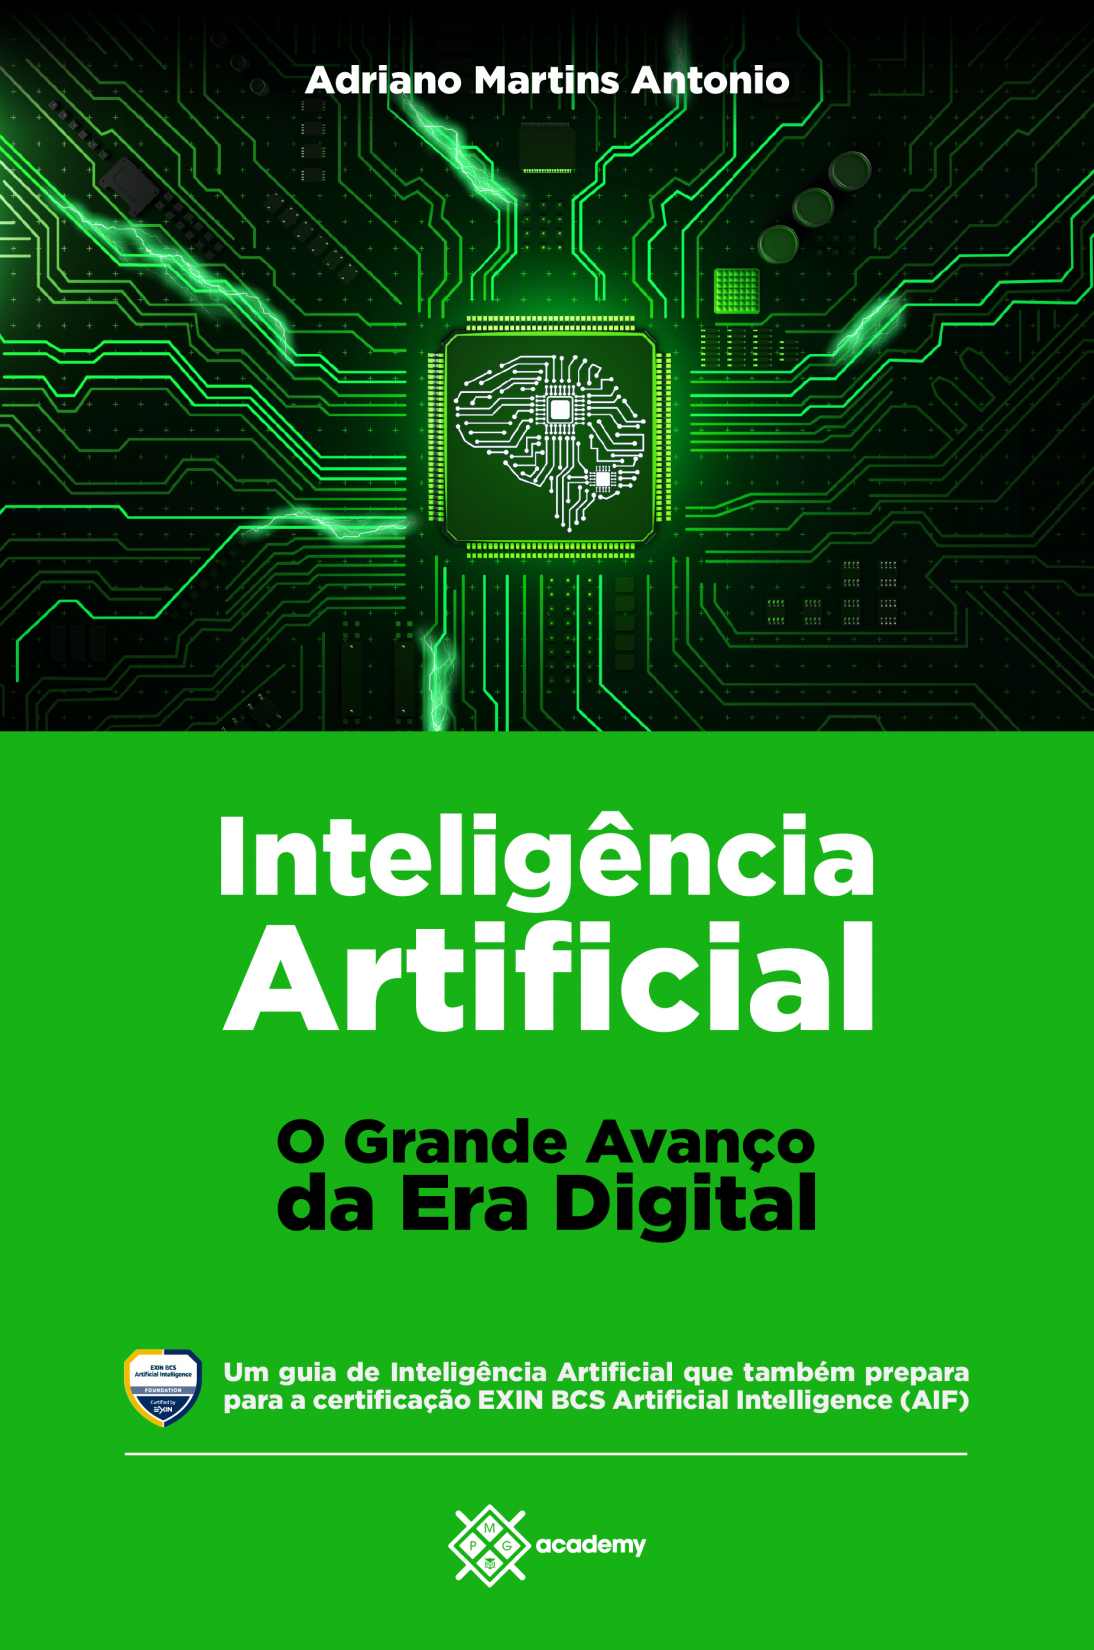 Capa-livro-Digital-Inteligencia-Artificial-O-Grande-Avanco-da-Era-Digital.png